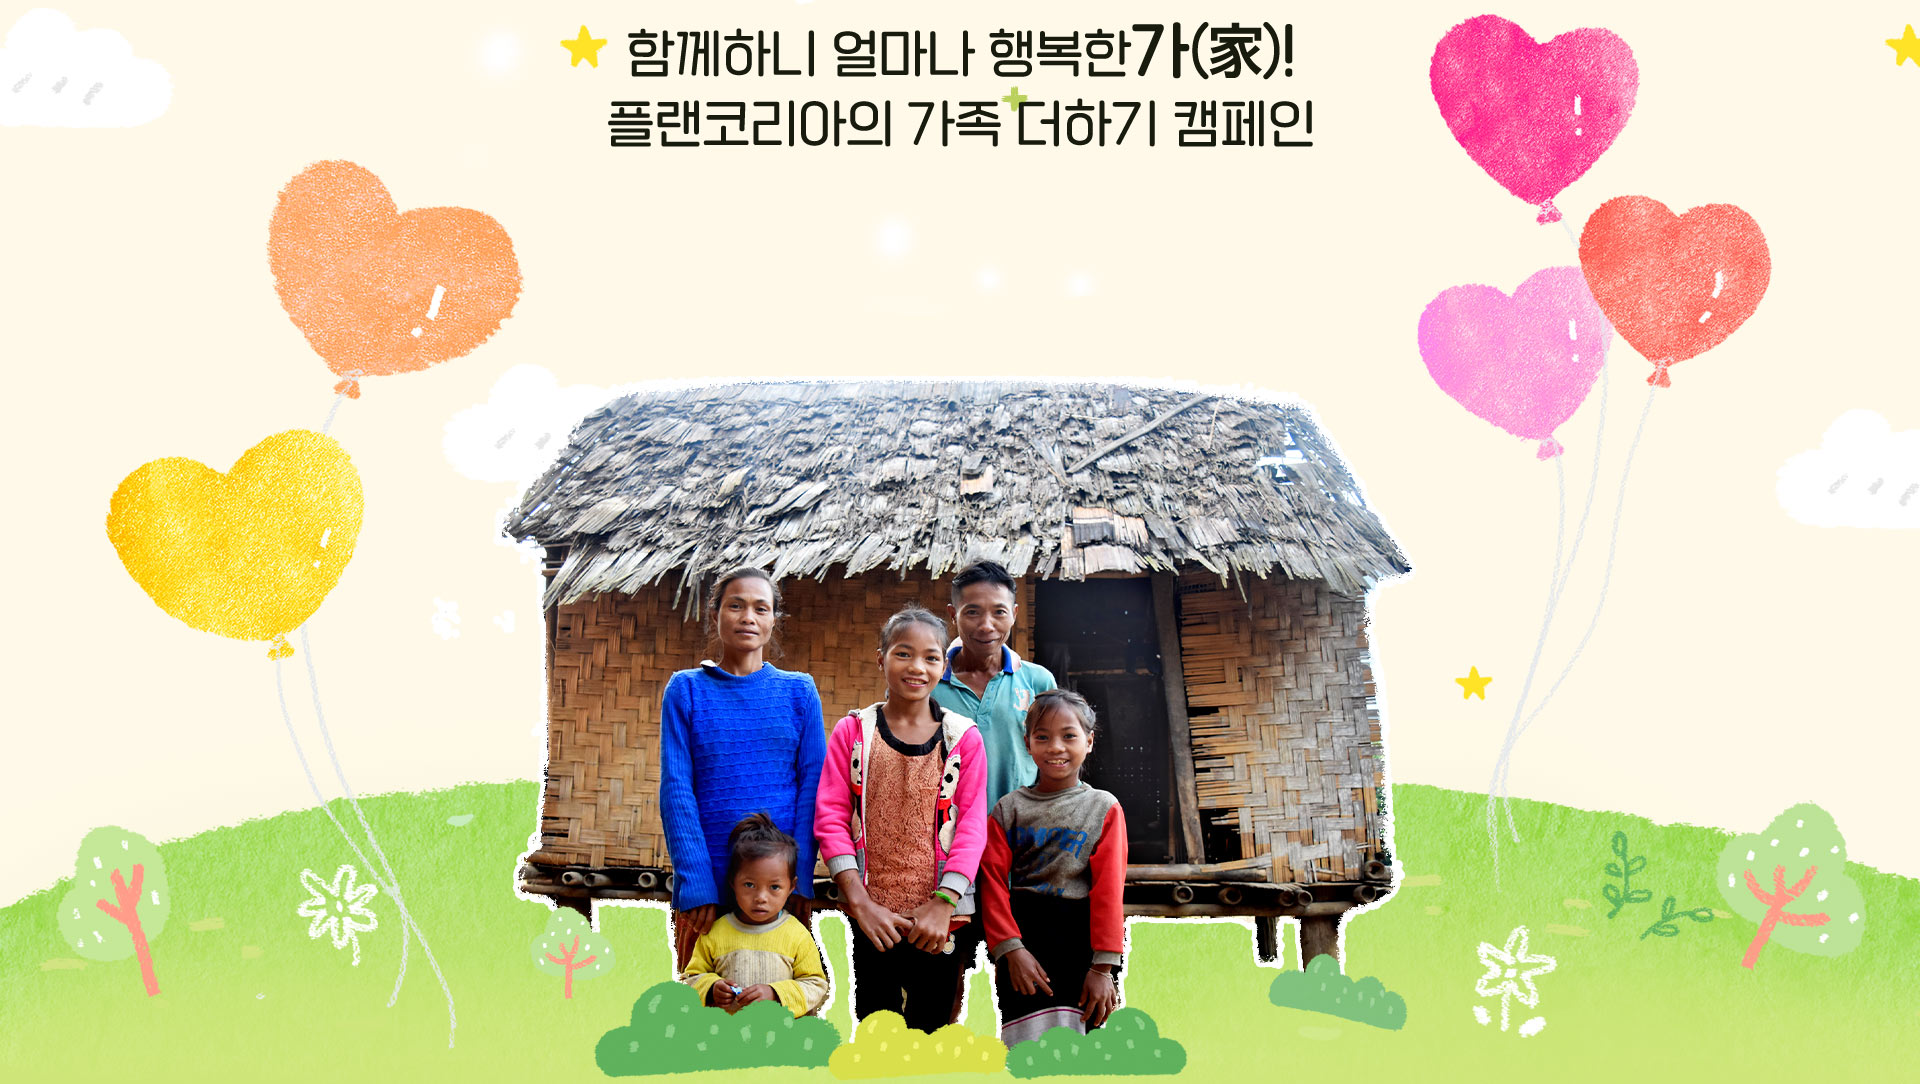 해외아동결연 캠페인 가족의 탄생, 함께하니 얼마나 행복한가! 플랜코리아의 가족 더하기 캠페인